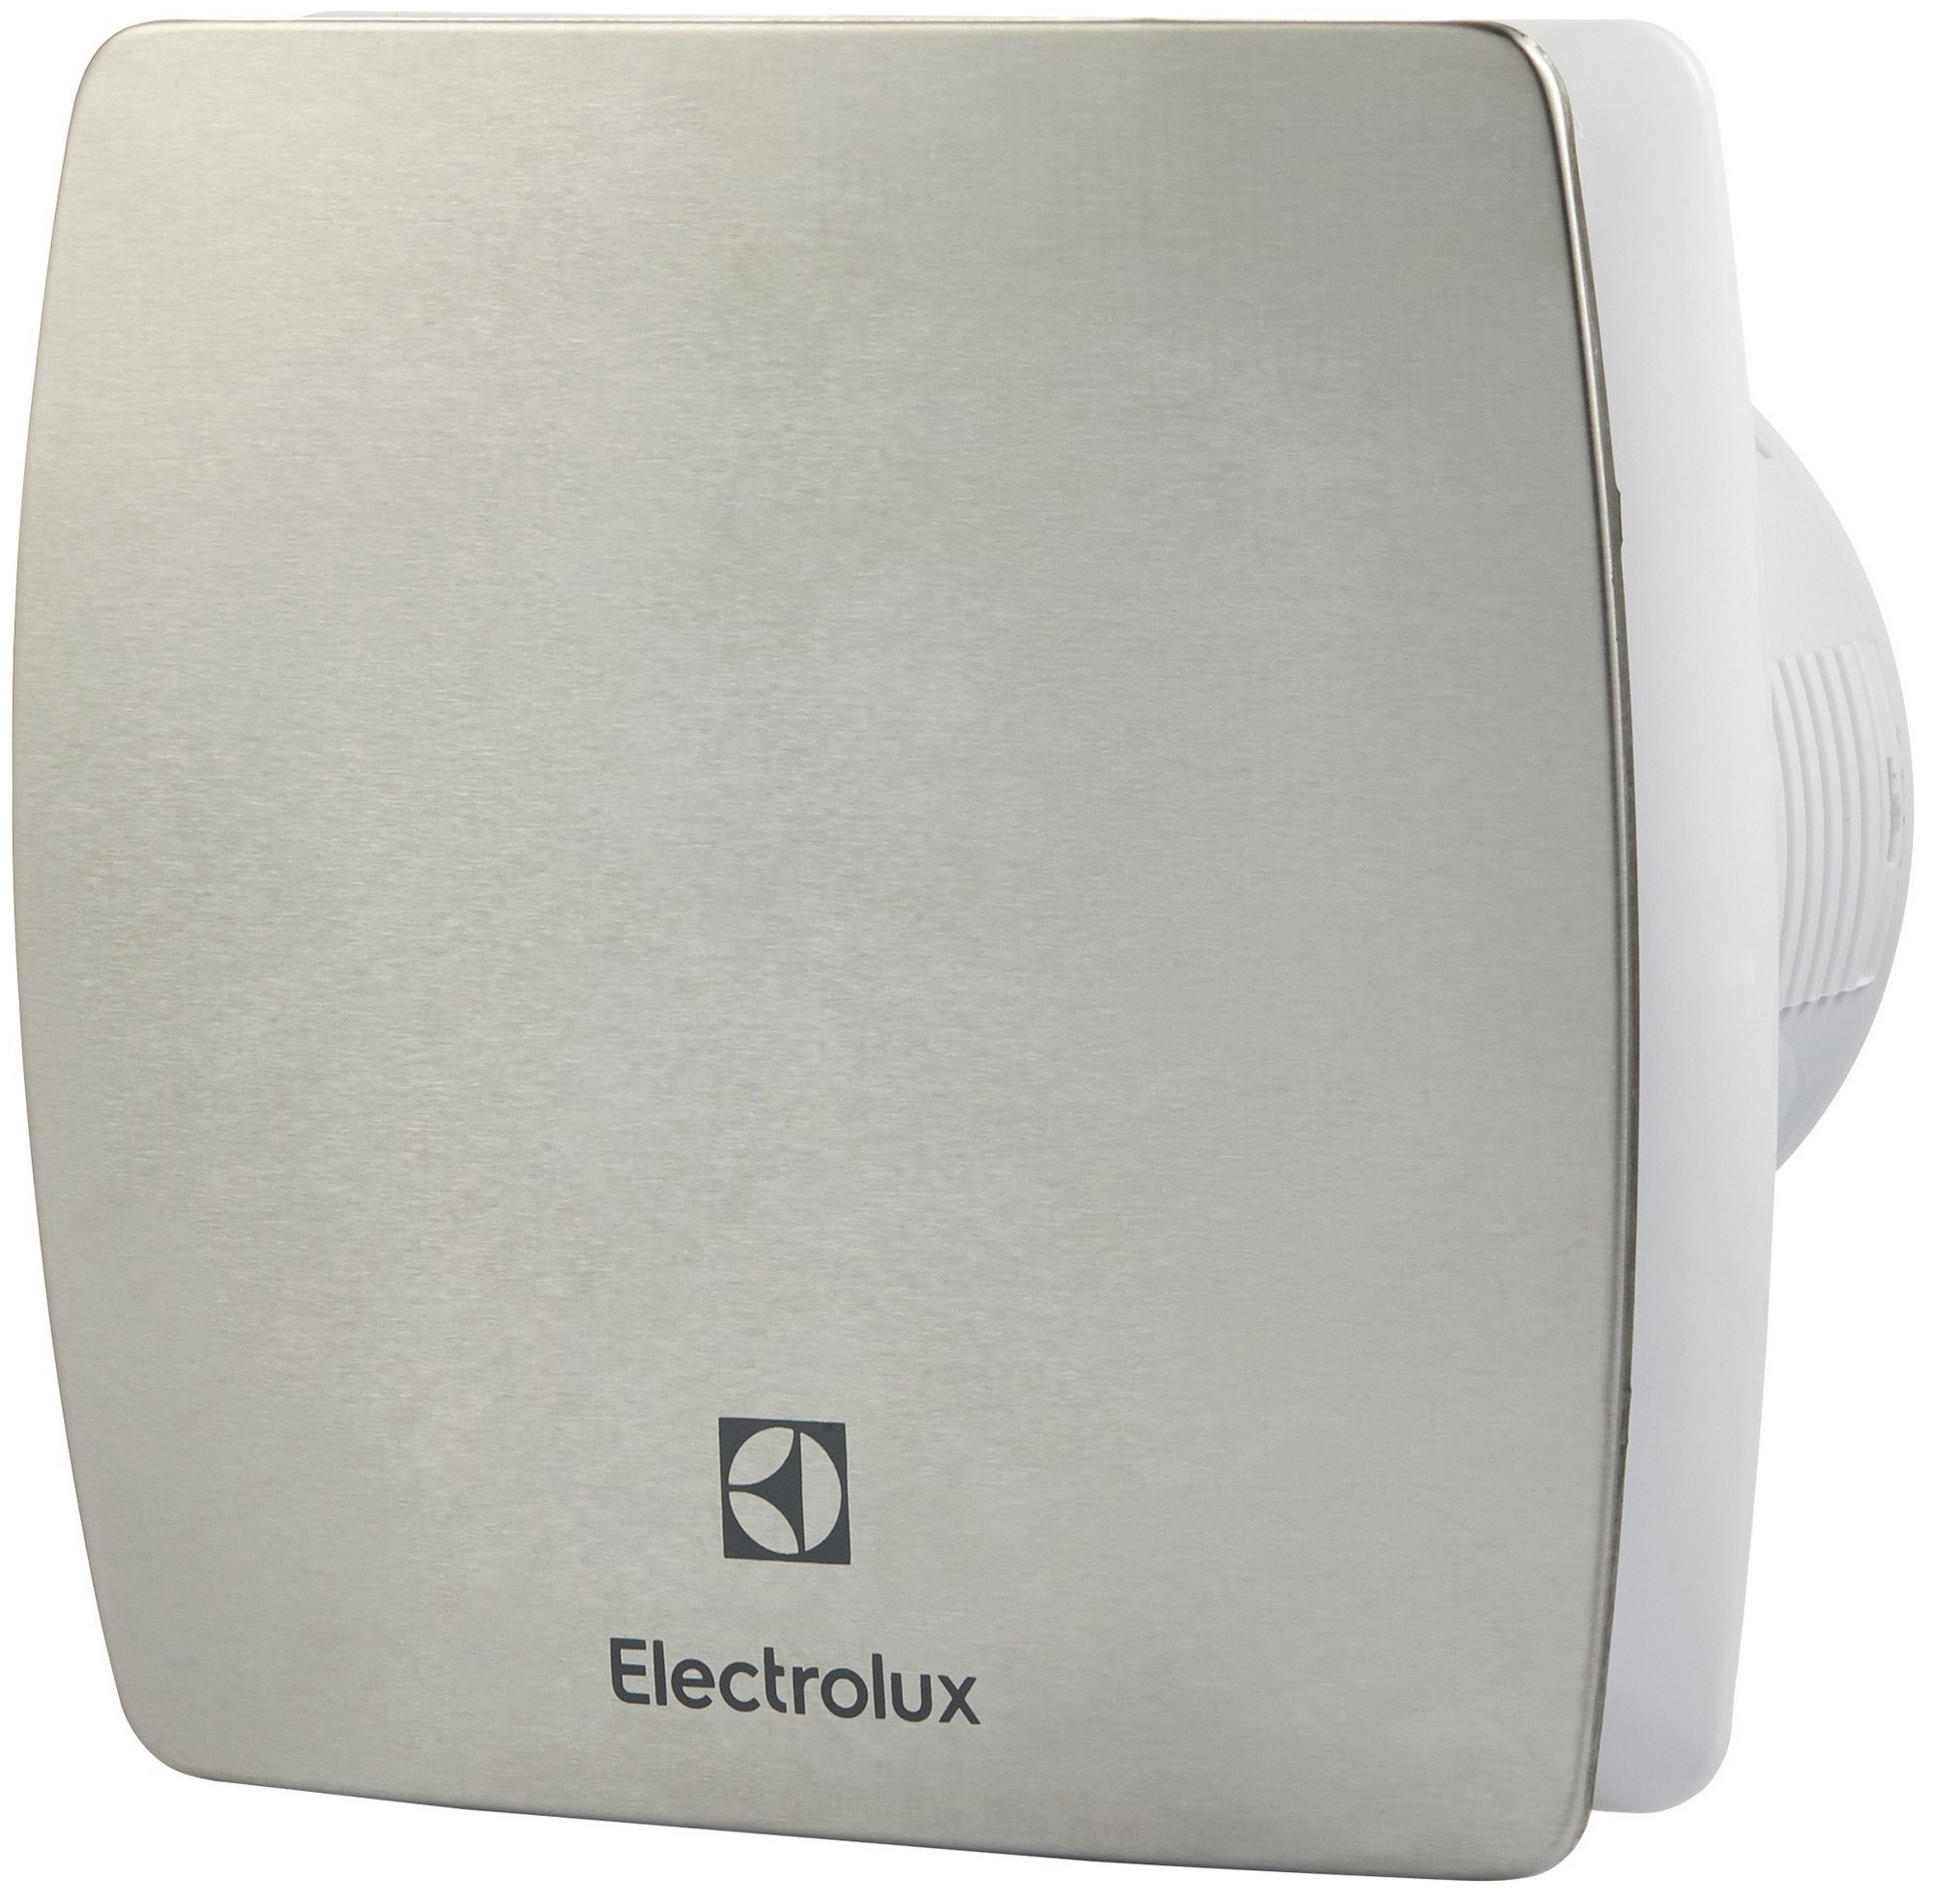 Вентилятор Electrolux вытяжной Electrolux Argentum EAFA-100T 